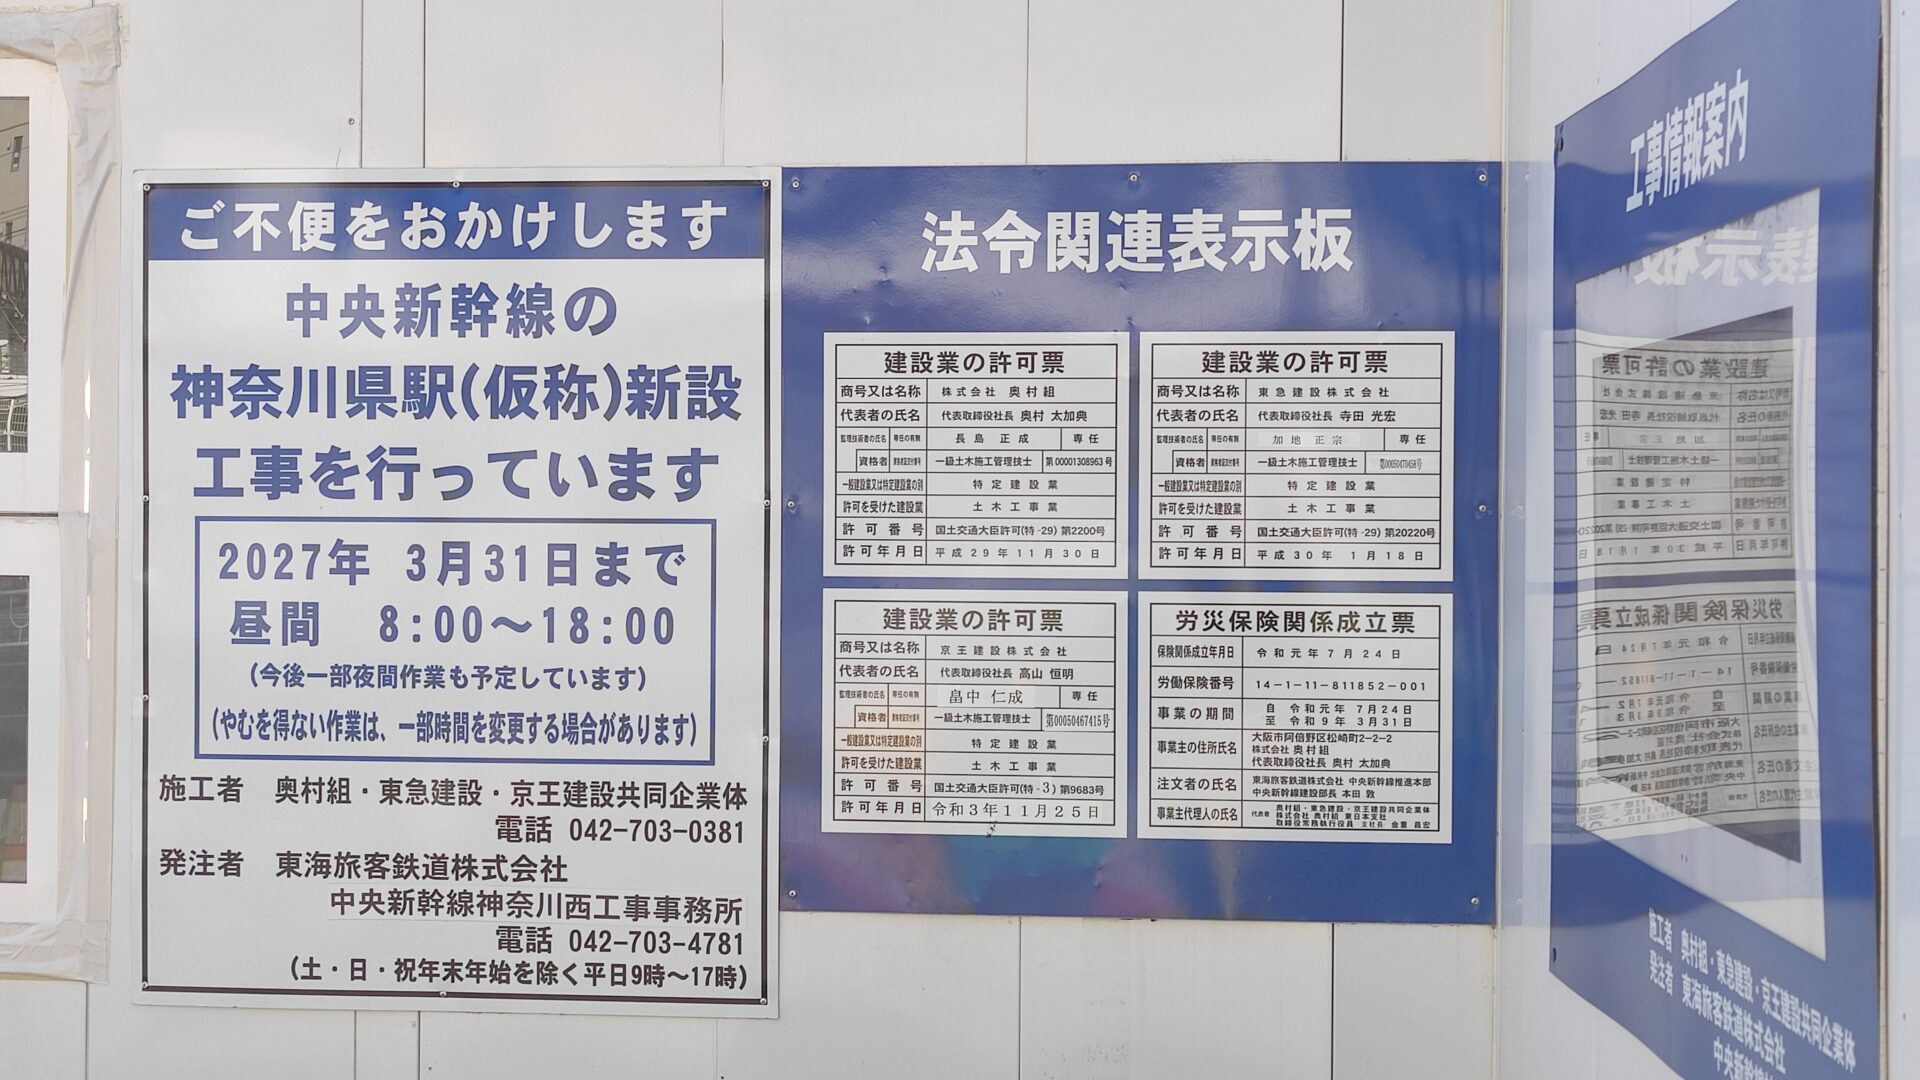 橋本駅近くで工事が進んでいる「神奈川県駅（仮称）」の工事の様子を見てきました。07